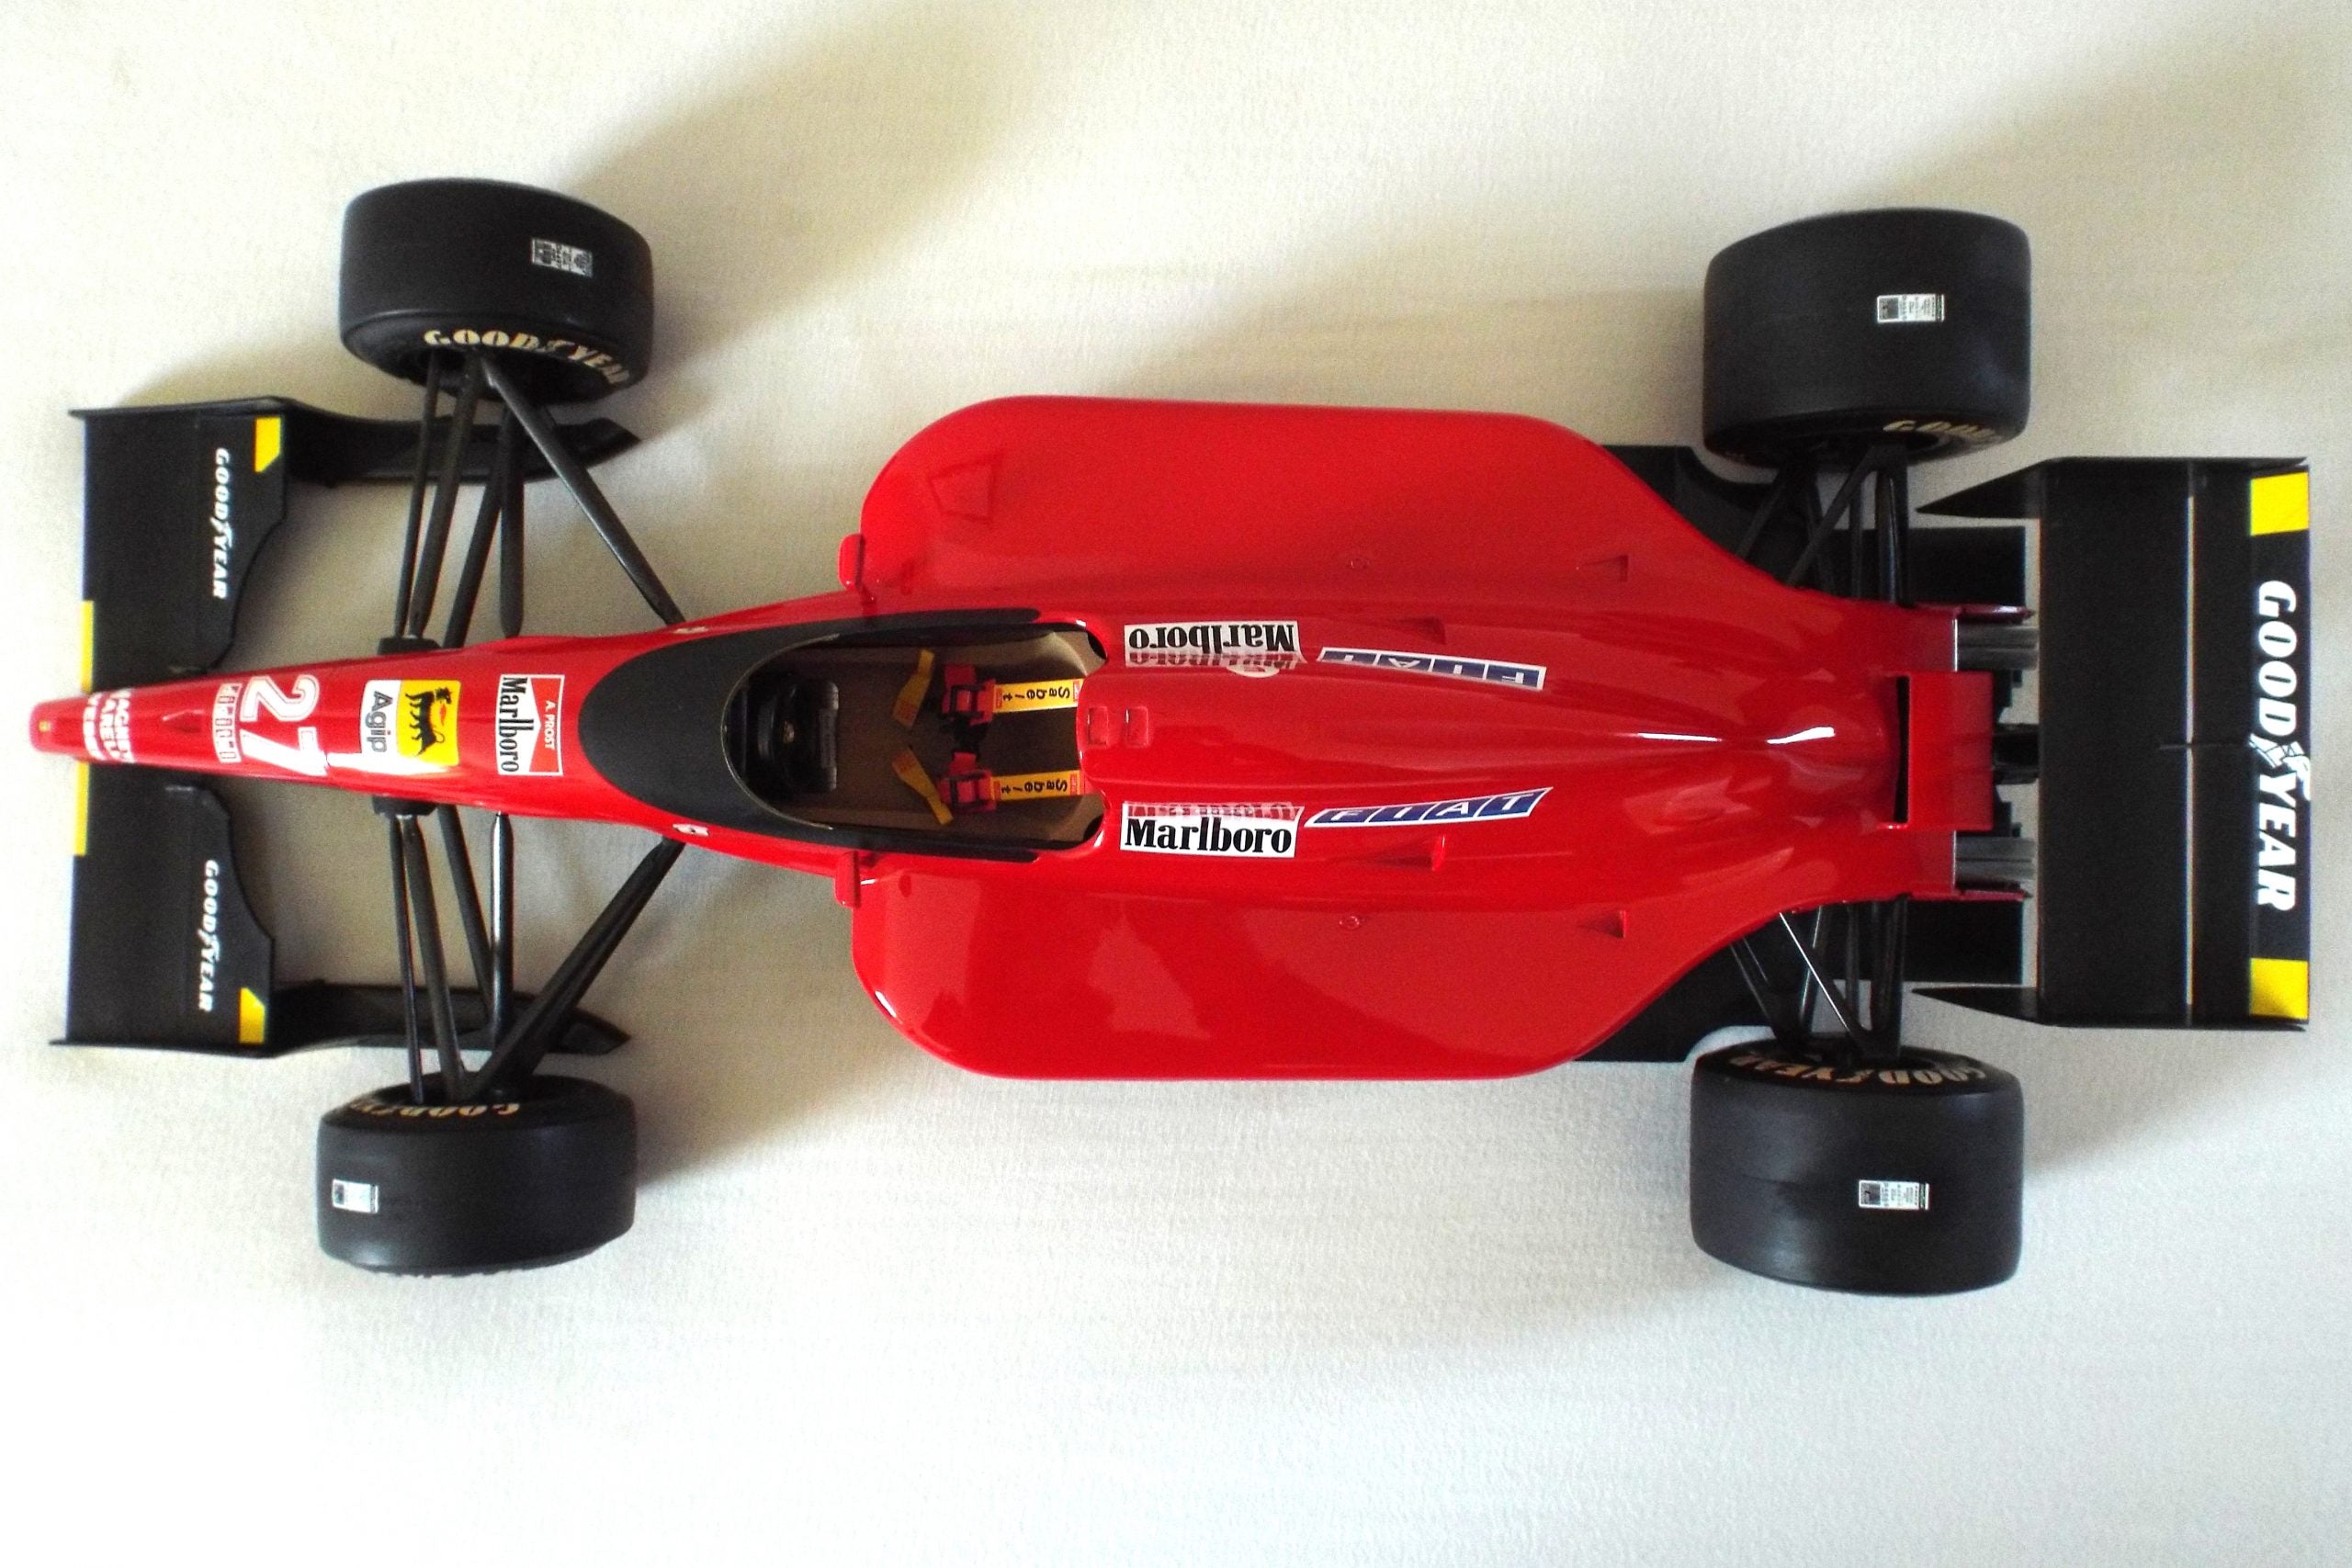 Rosso escala 1:8 Ferrari 643